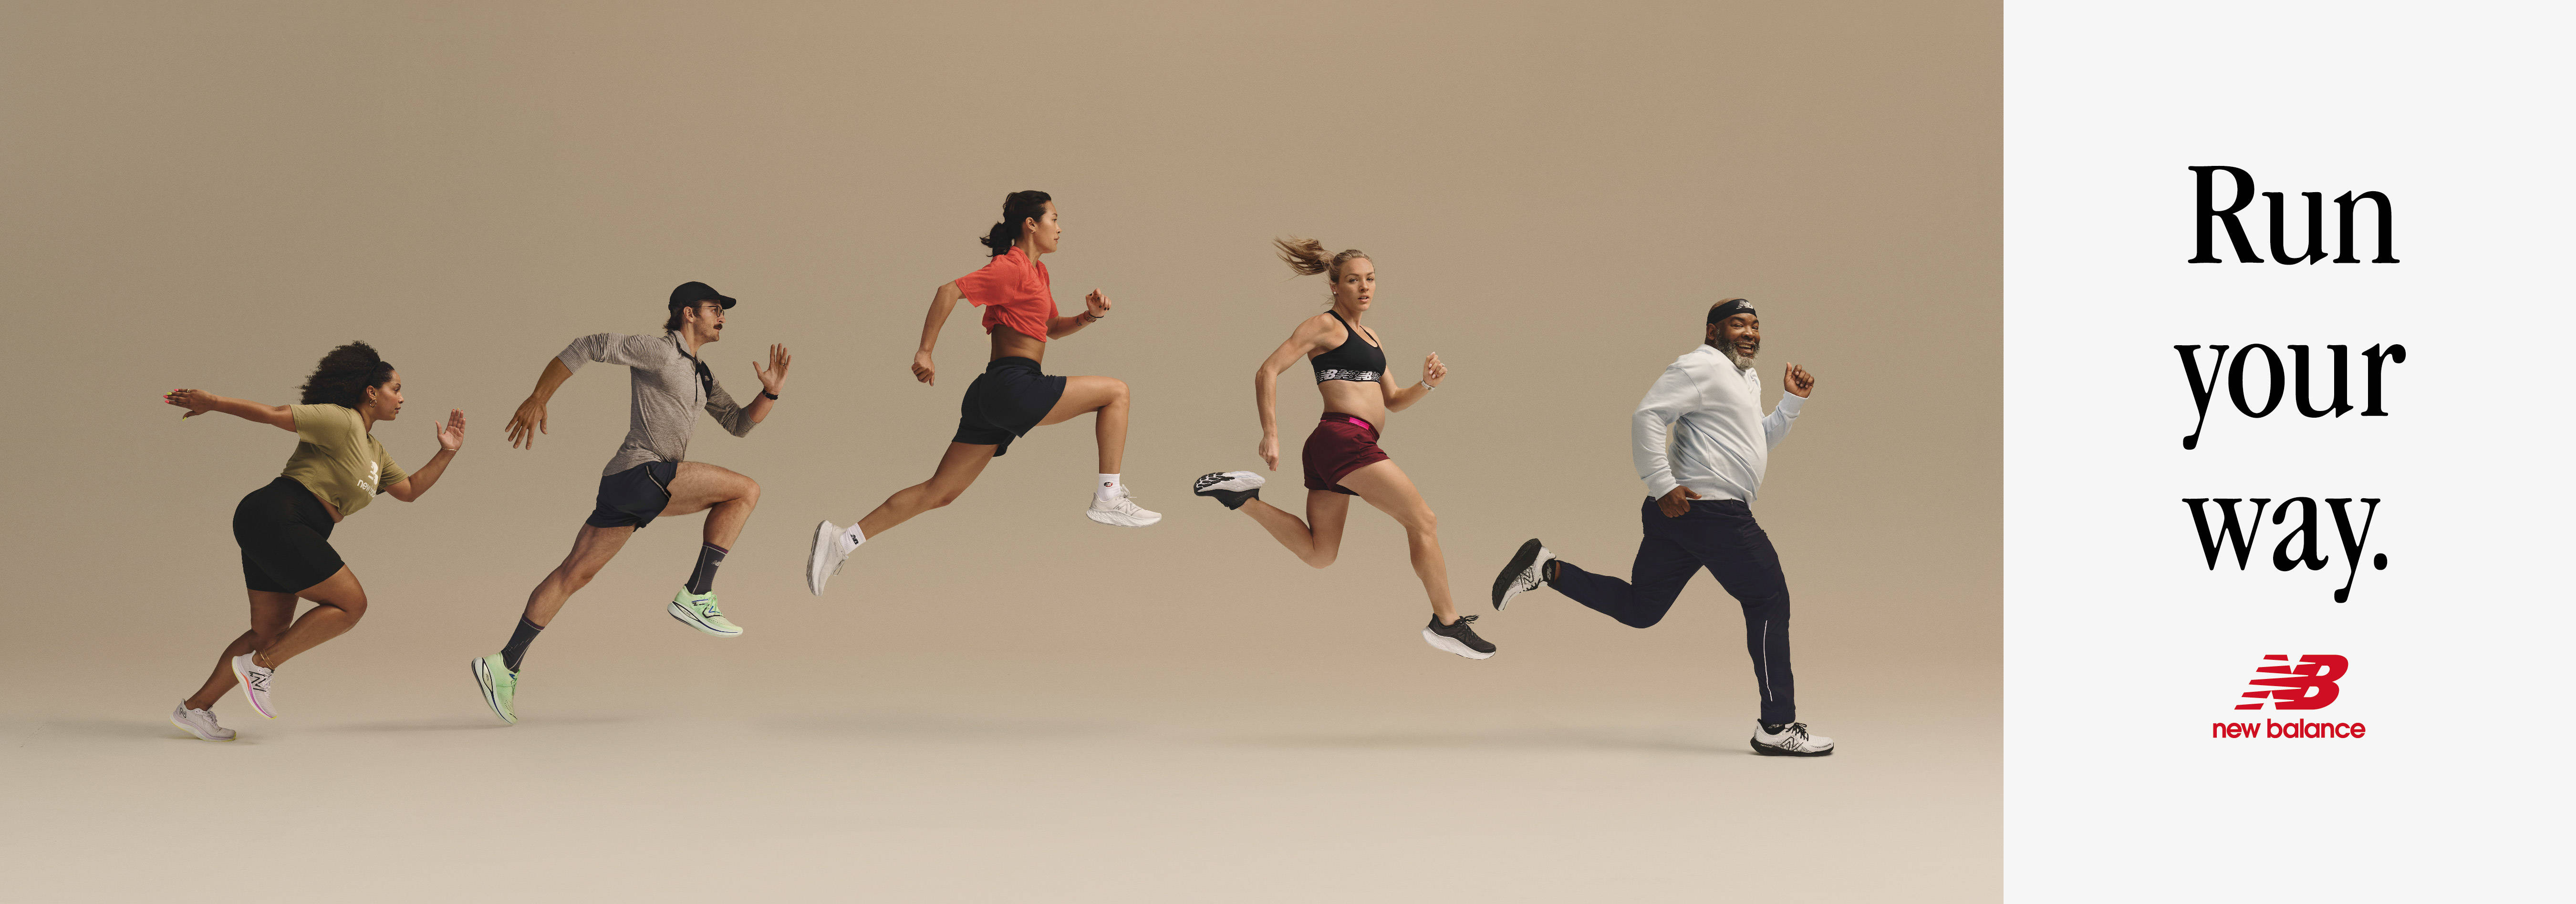 全新品牌标语“Run Your Way”正式发布，New Balance支持每一位跑者跑自己的路。-南方体育网